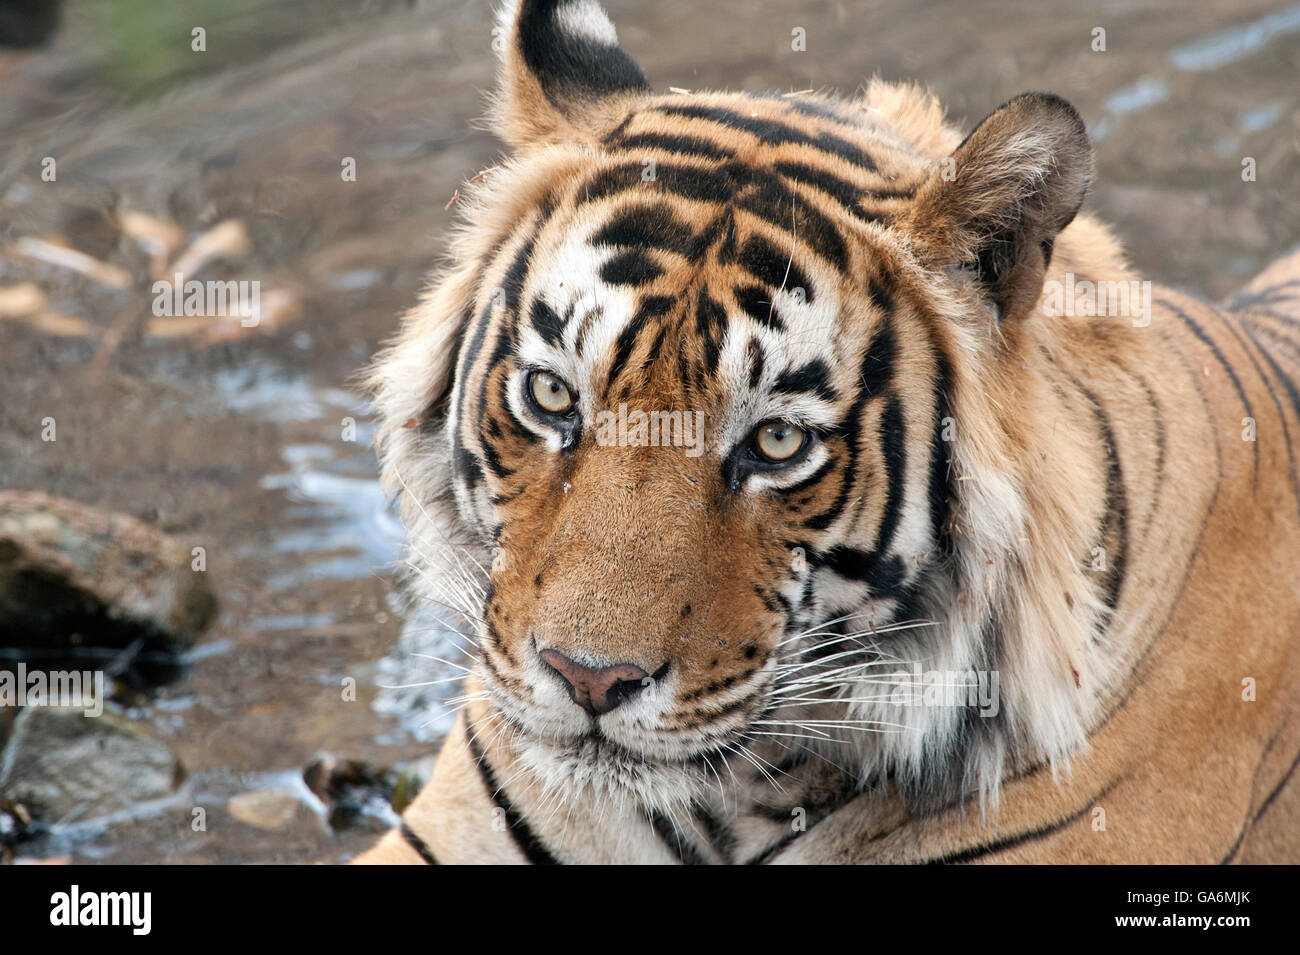 L'image de Tiger ( Panthera tigris ) T57 a été prise à Ranthambore, Inde Banque D'Images